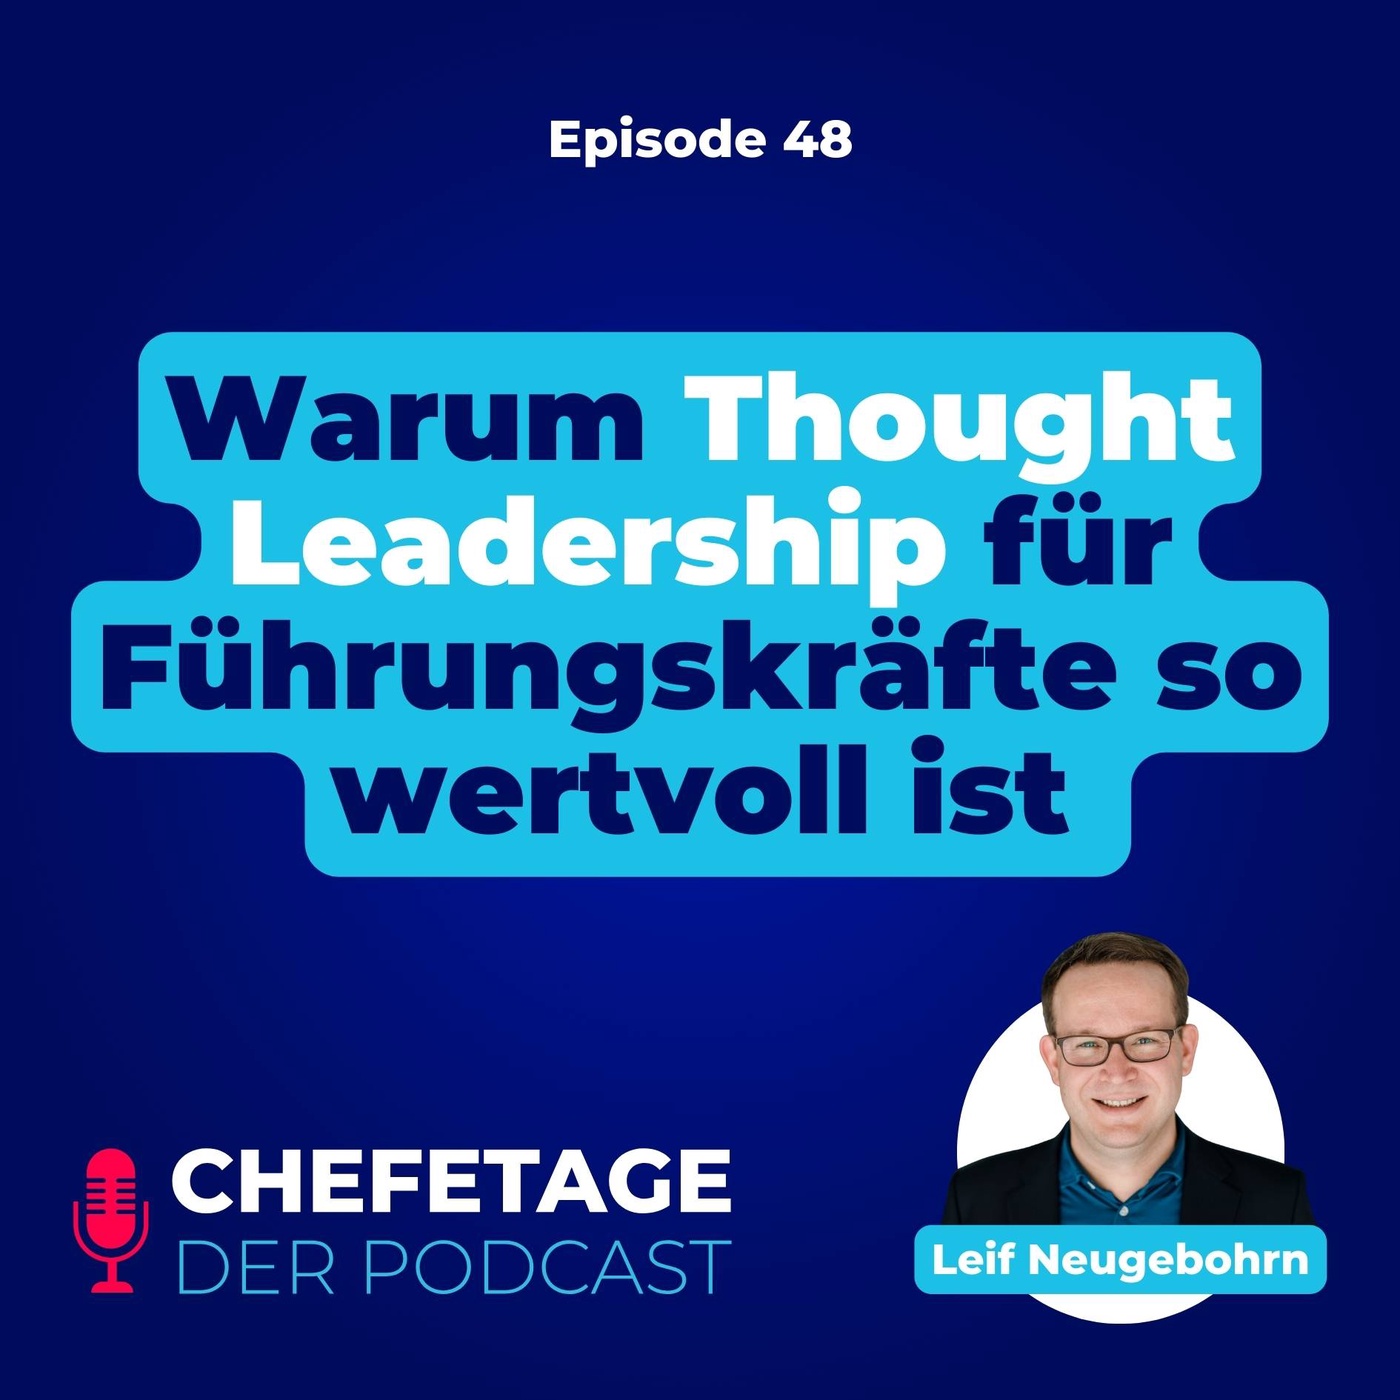 48 - Warum Thought Leaders﻿hip für Führungskräfte so wertvoll ist